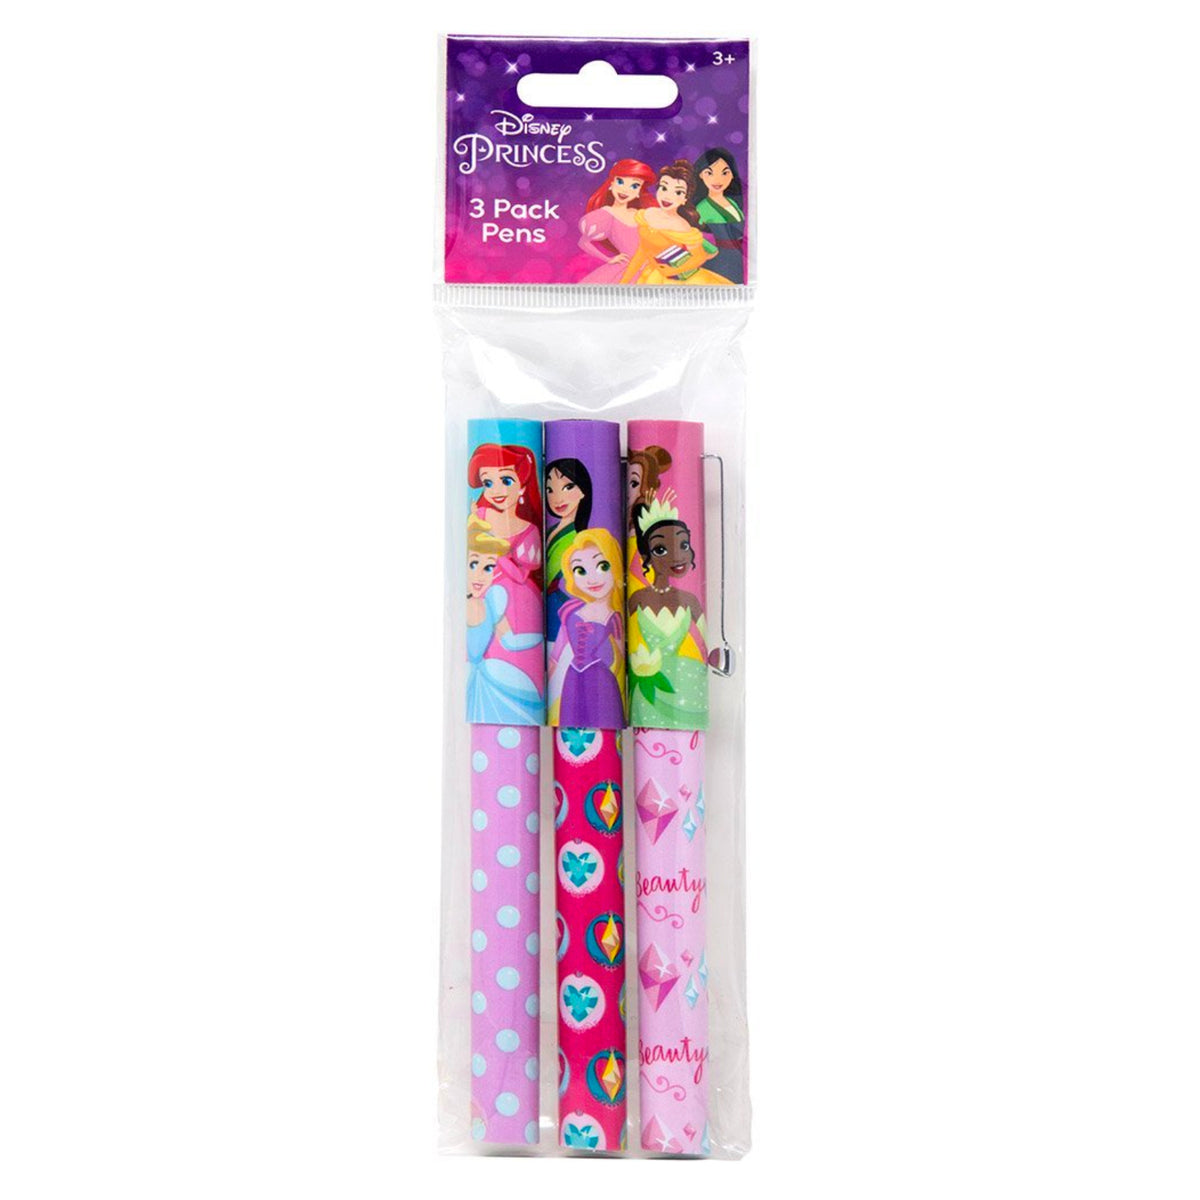 Disney Princess Pens 3 Pack